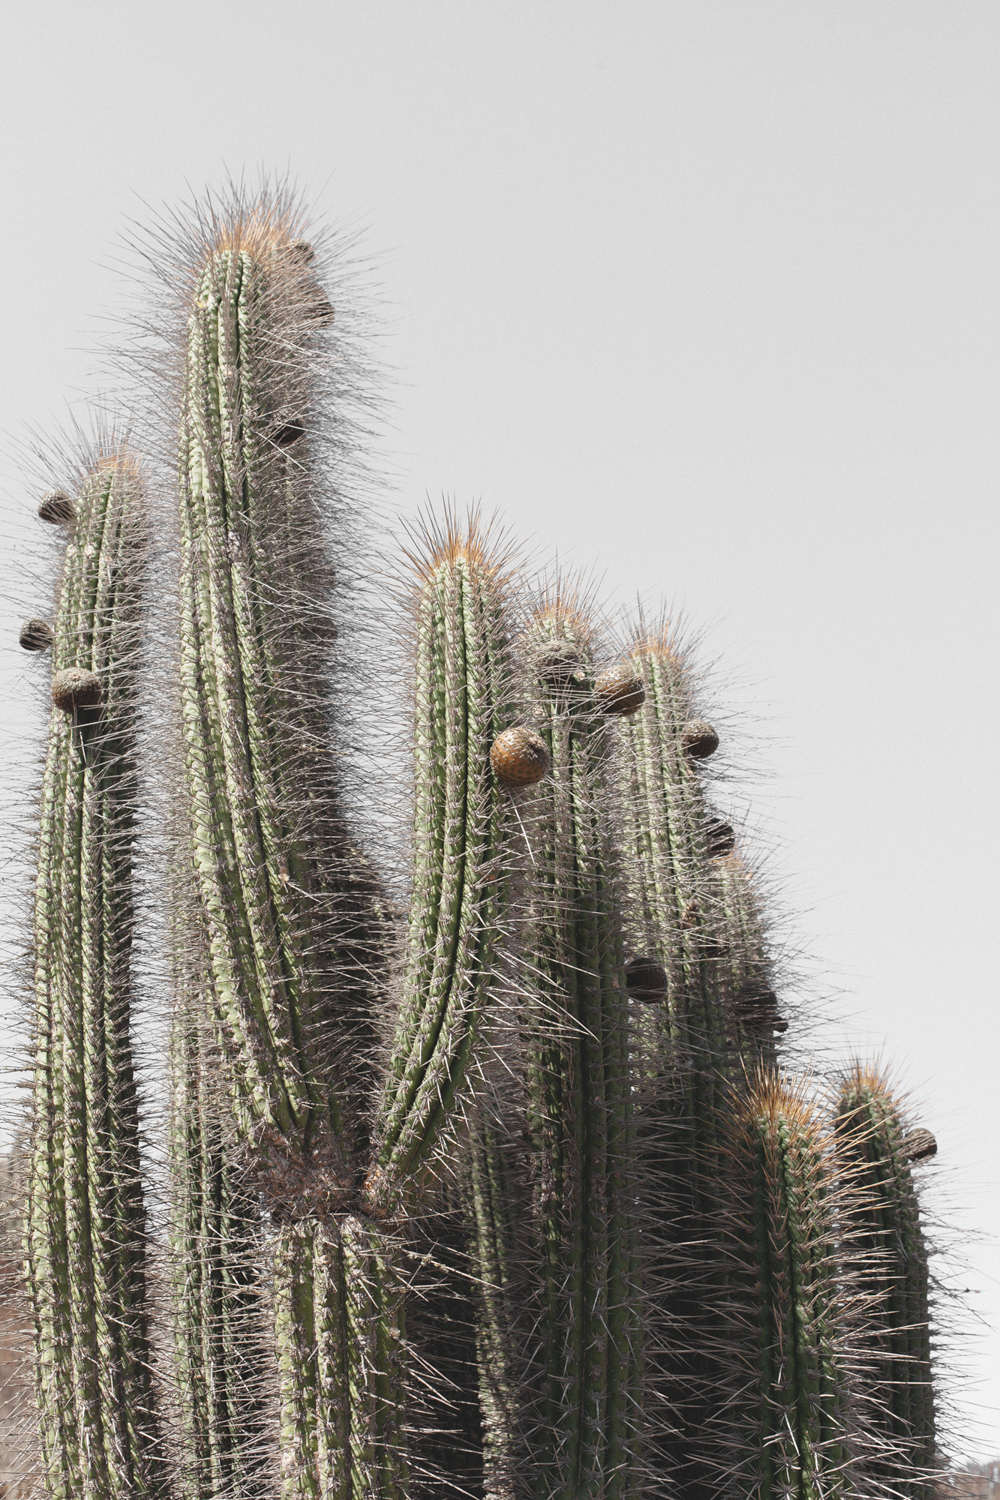 Cactus I